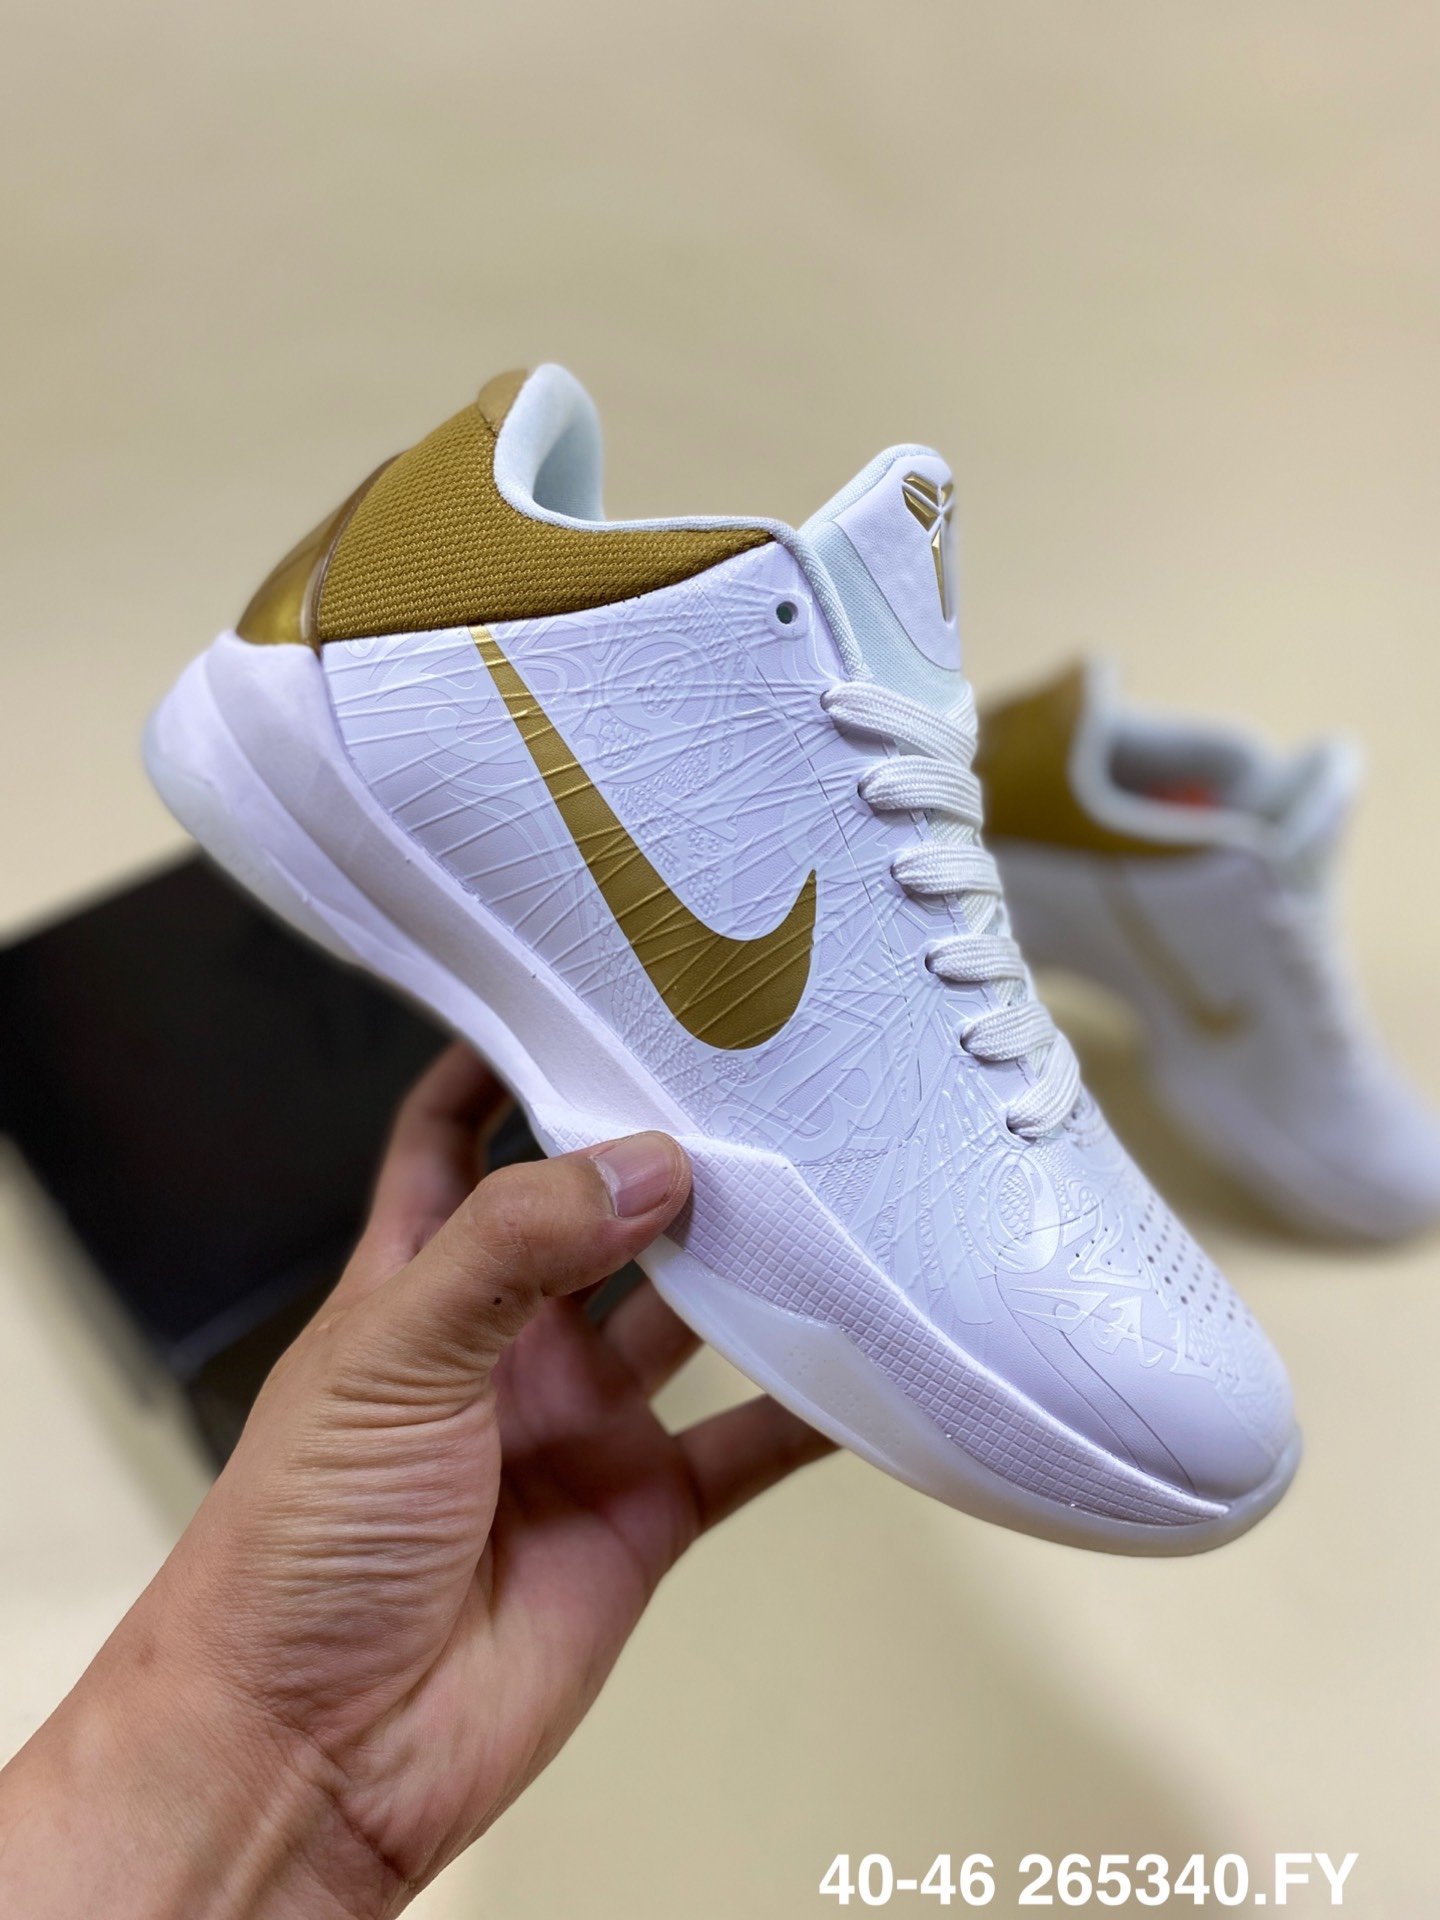 2020 Nike Zoom Kobe Bryant 5 White Gold